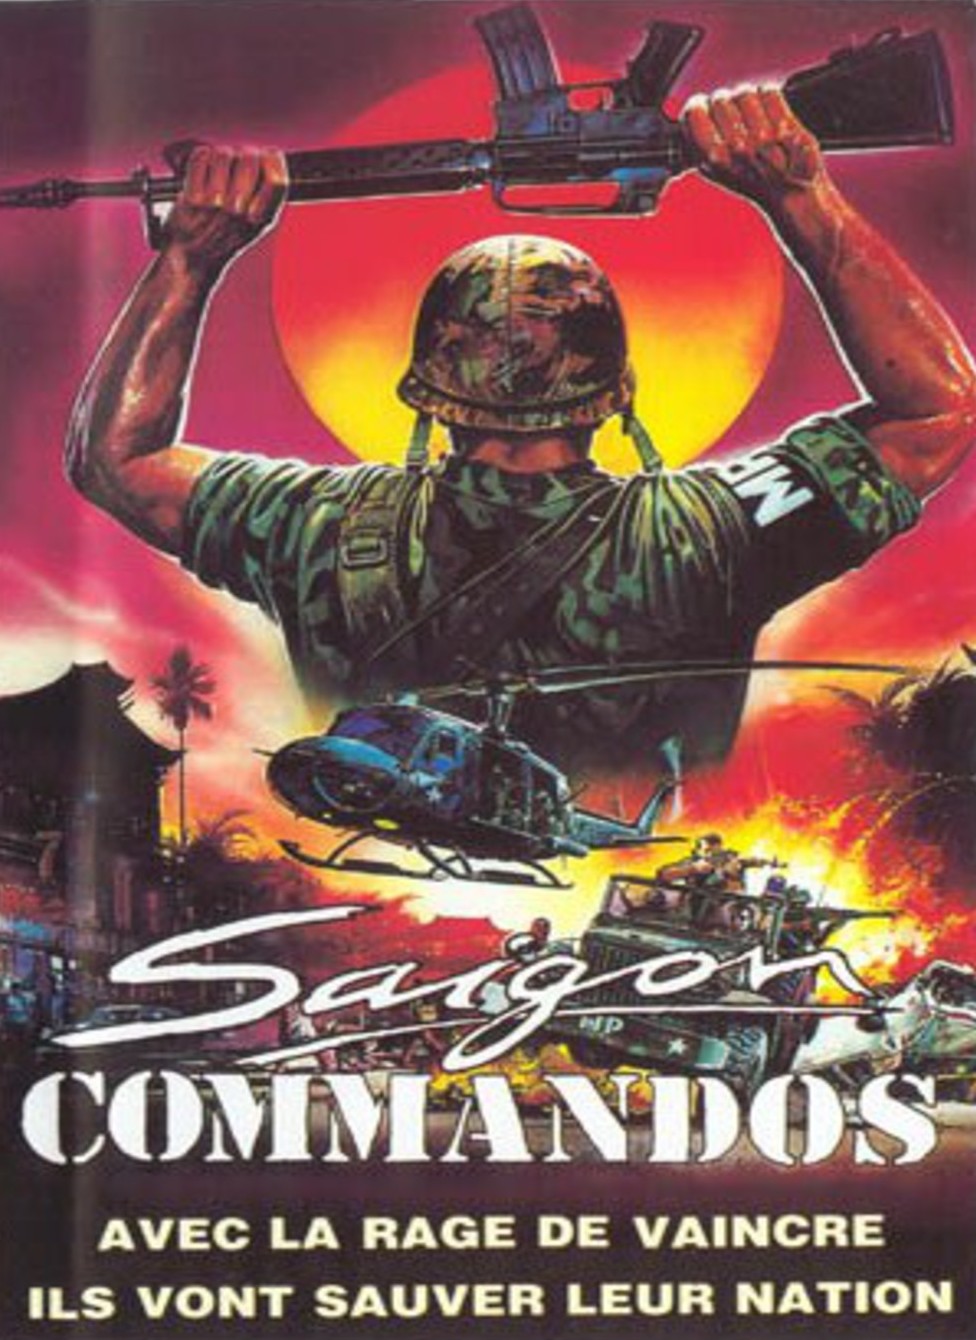 Saigon Commandos